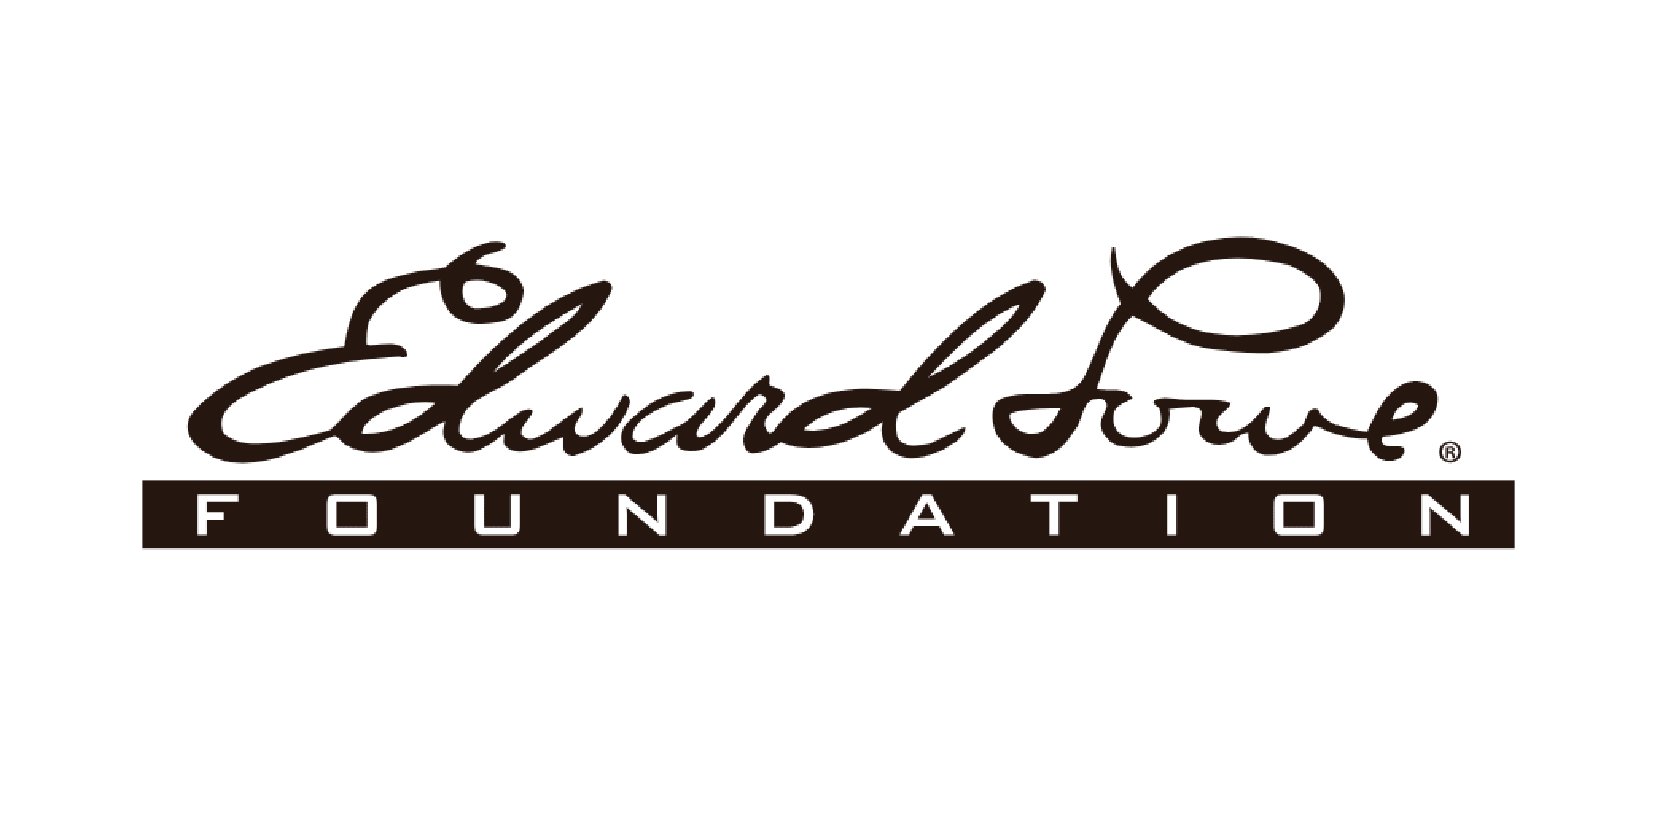 EdwardLowe logo